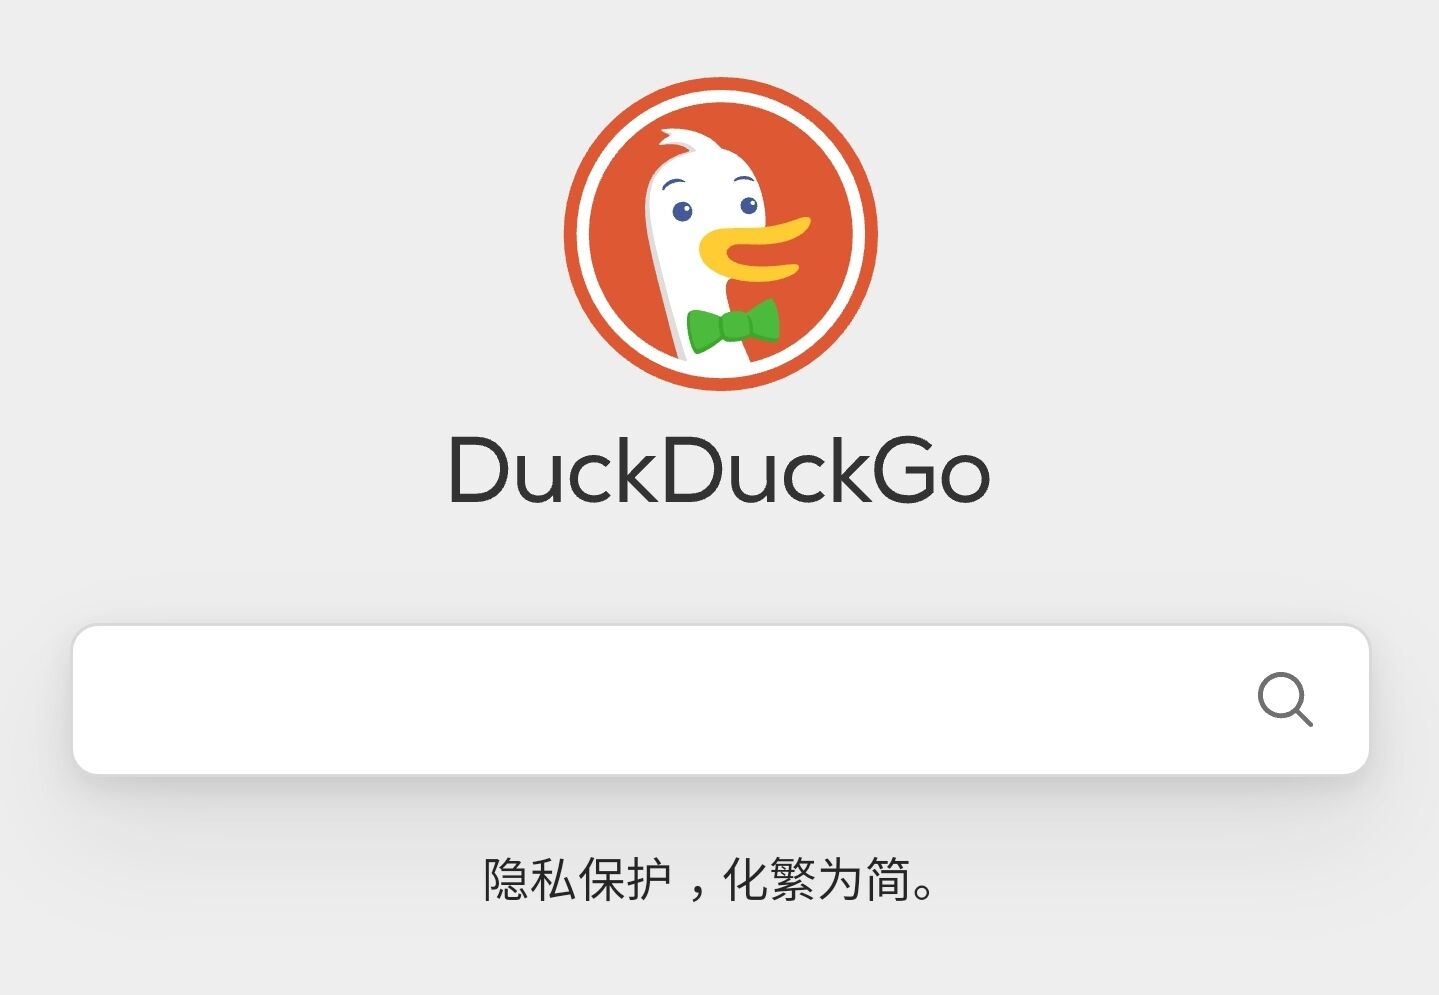 苹果正在考虑将 Safari 无痕模式搜索引擎从谷歌切换至 DuckDuckGo，消息传出